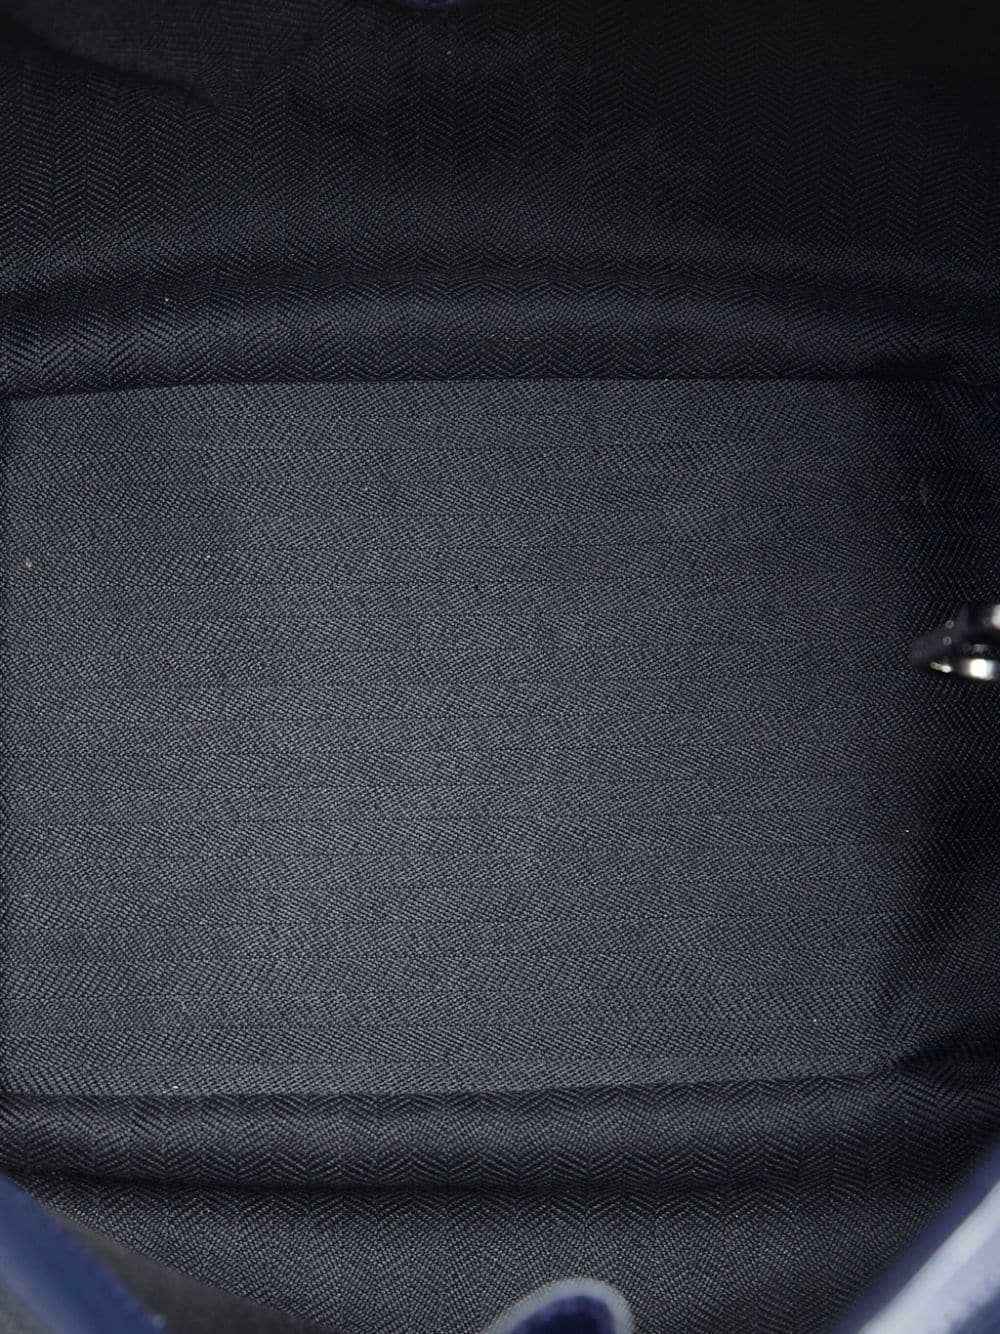 Loewe Pre-Owned 2016 Hammock satchel - Blue - image 5